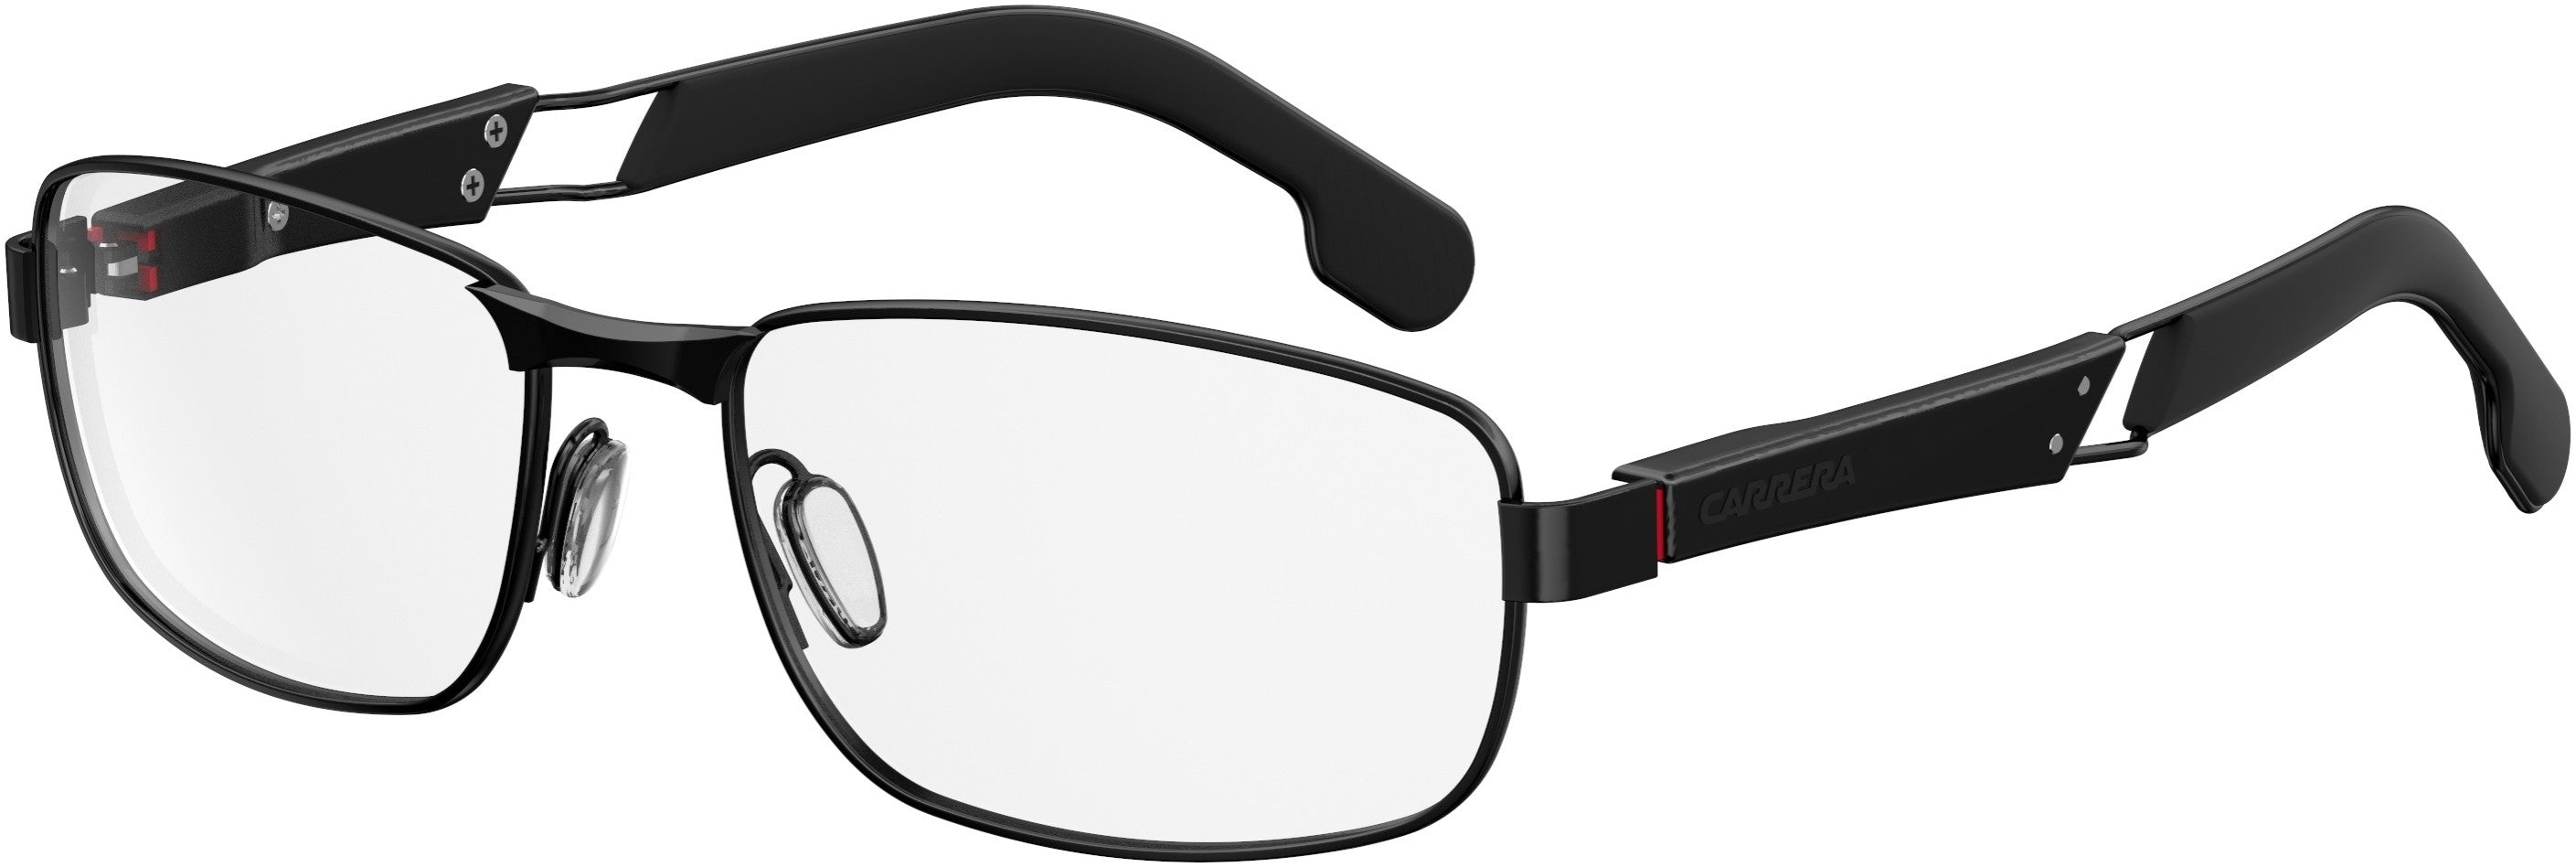  Carrera 4405/V Rectangular Eyeglasses 0807-0807  Black (00 Demo Lens)